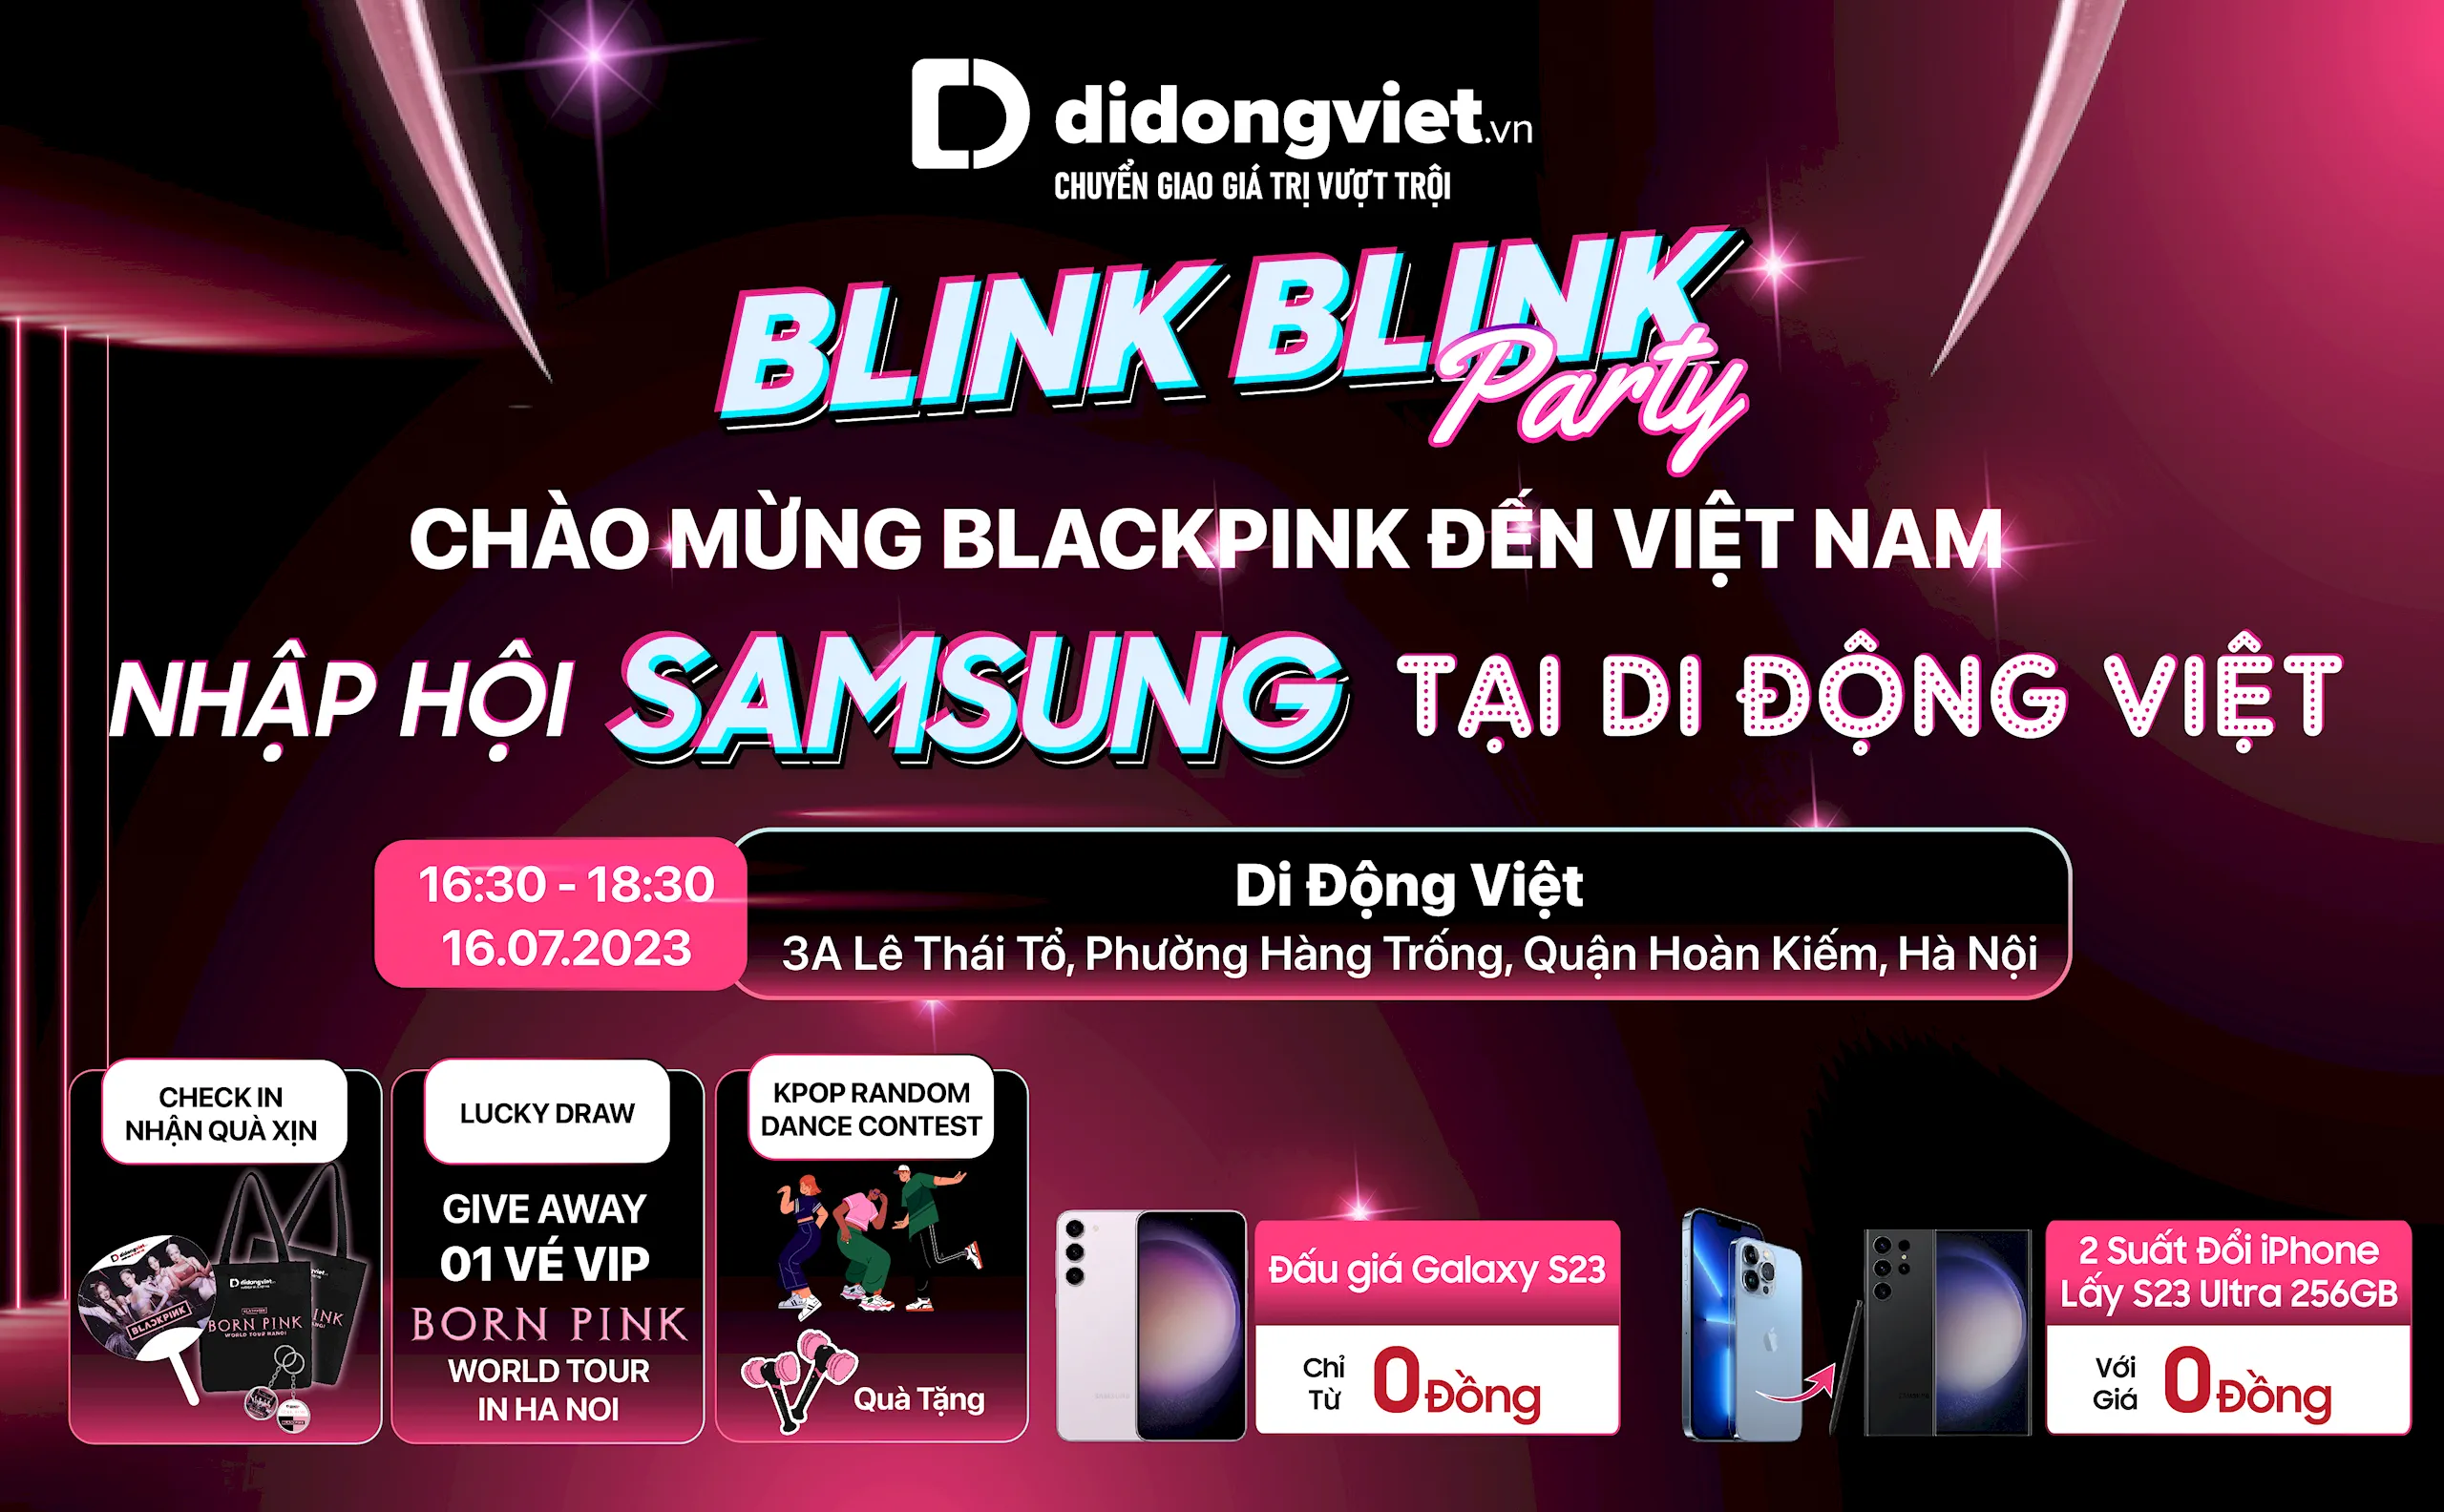 Đấu giá Galaxy S23 từ 0 đồng, cùng cơ hội nhận vé VIP concert Born Pink